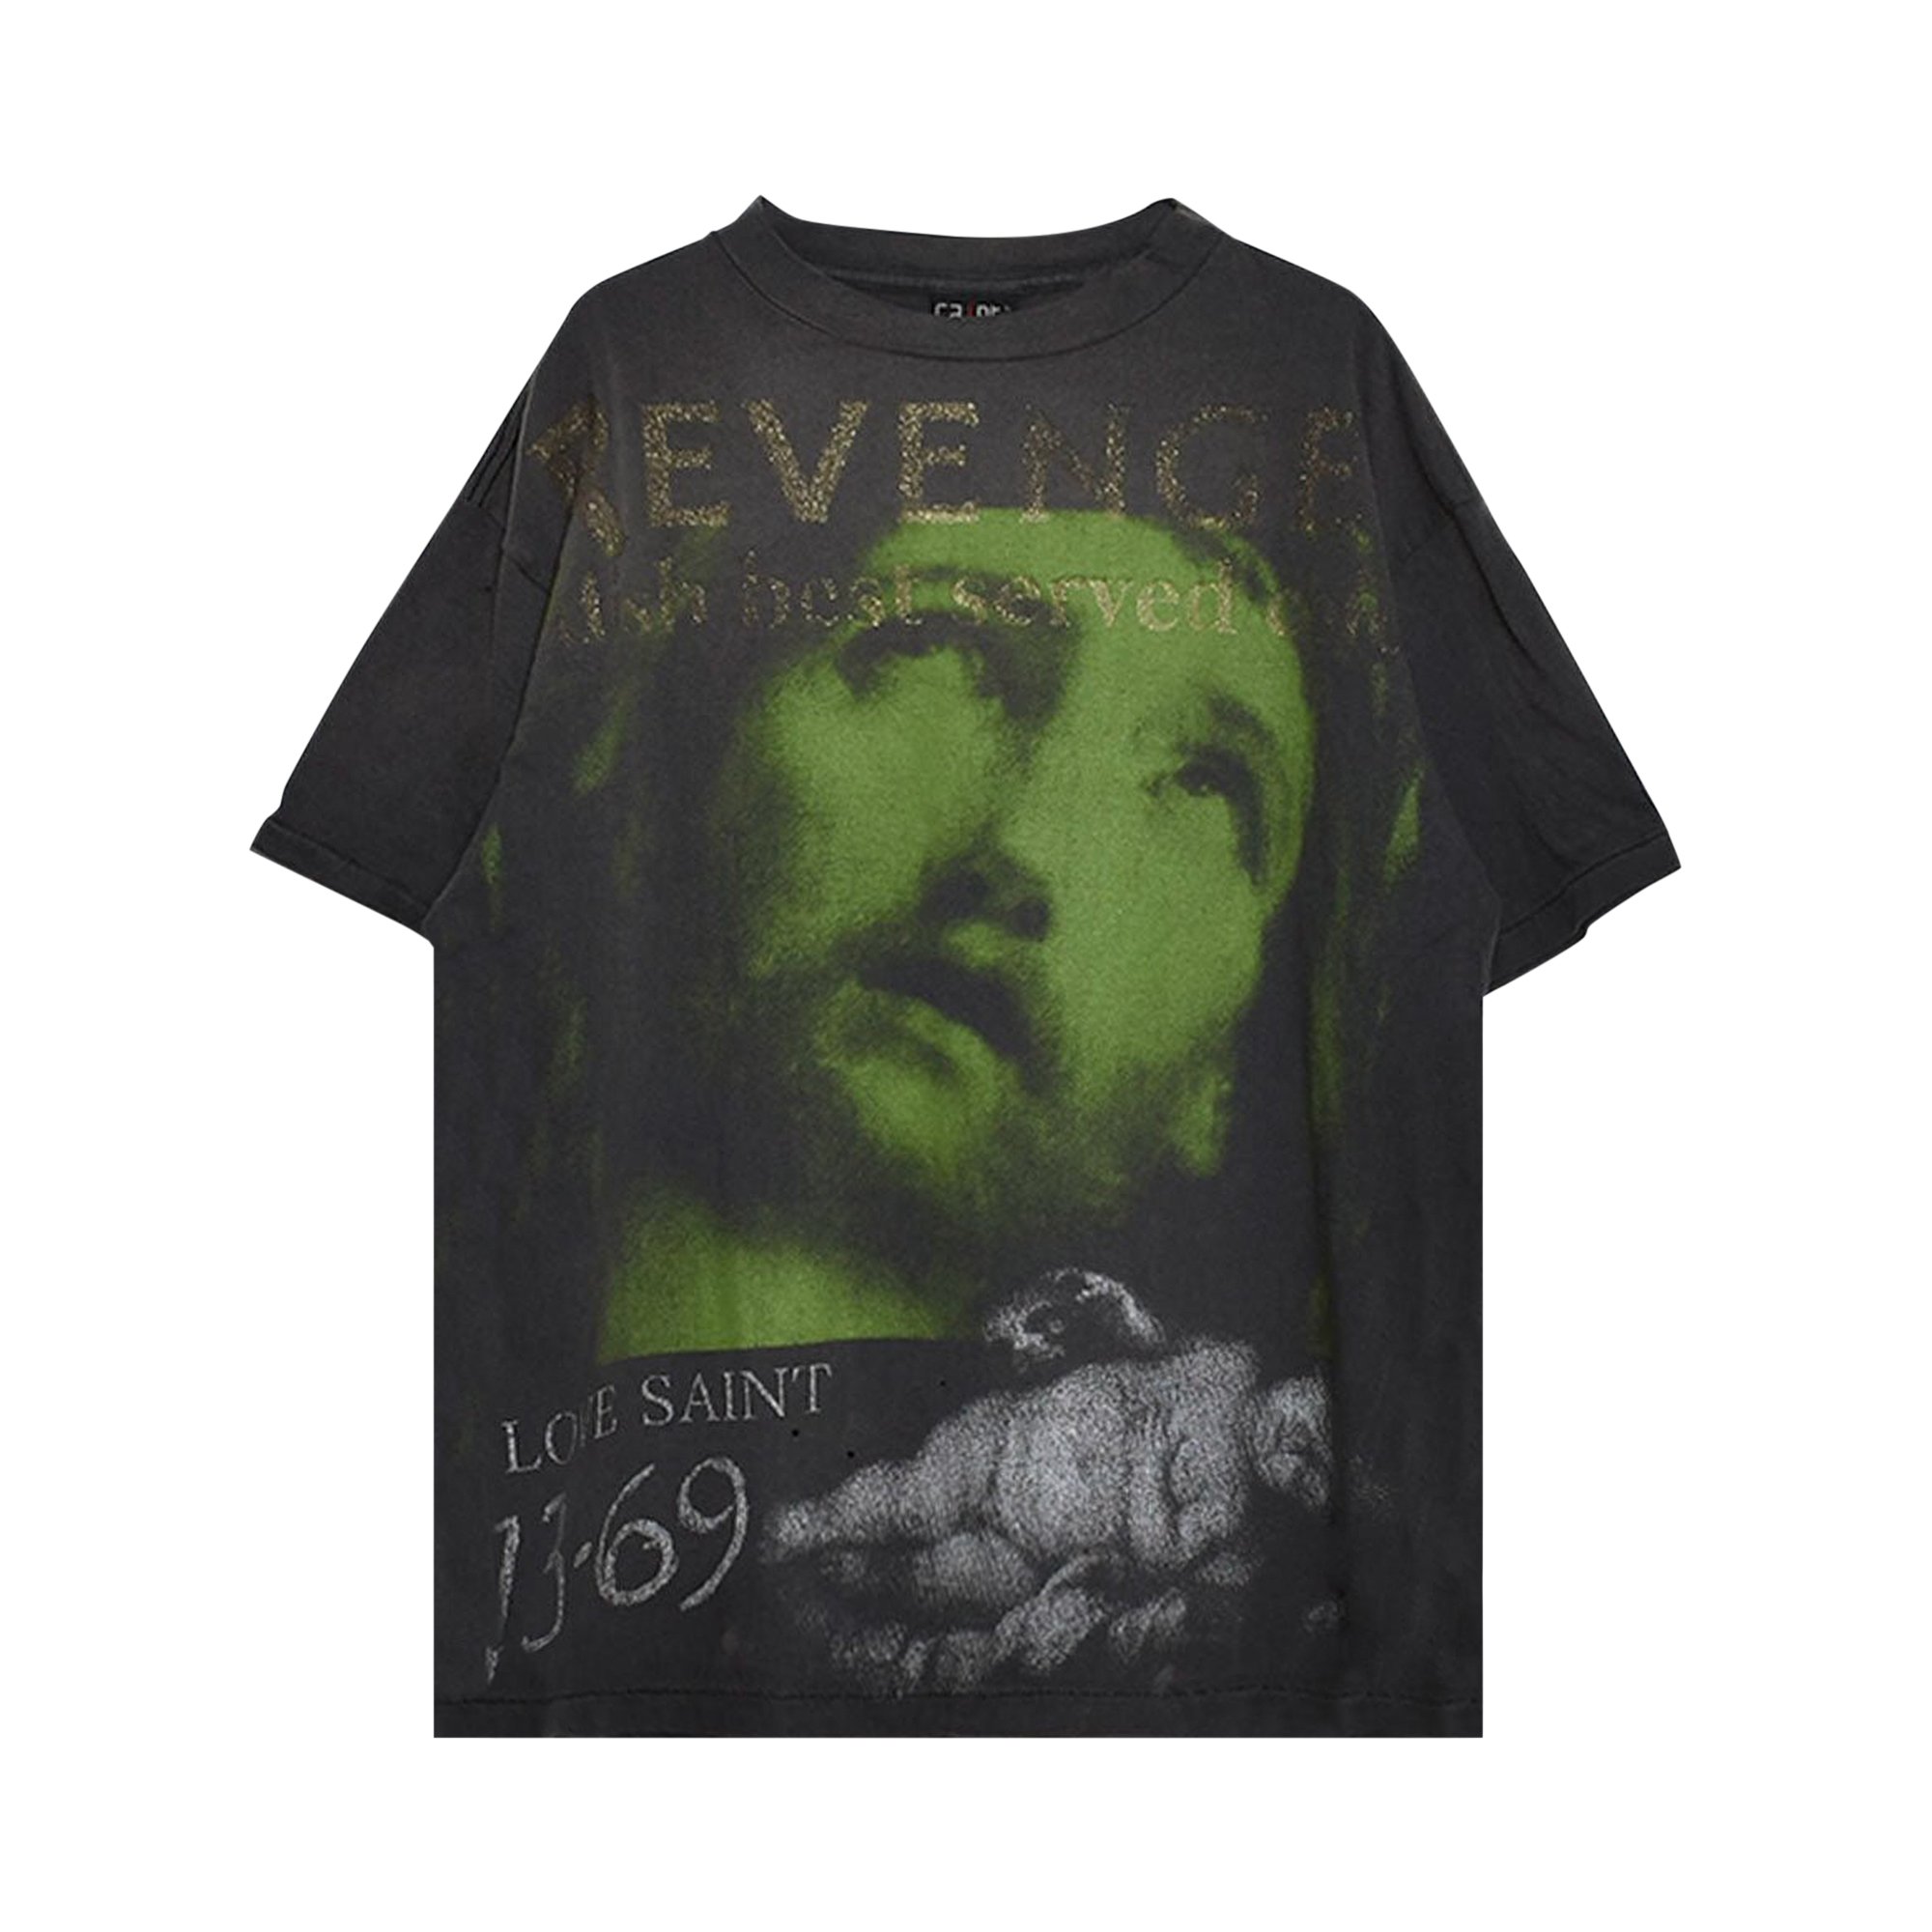 Buy Saint Michael Revenge Tee 'Black' - SM S23 0000 085 | GOAT